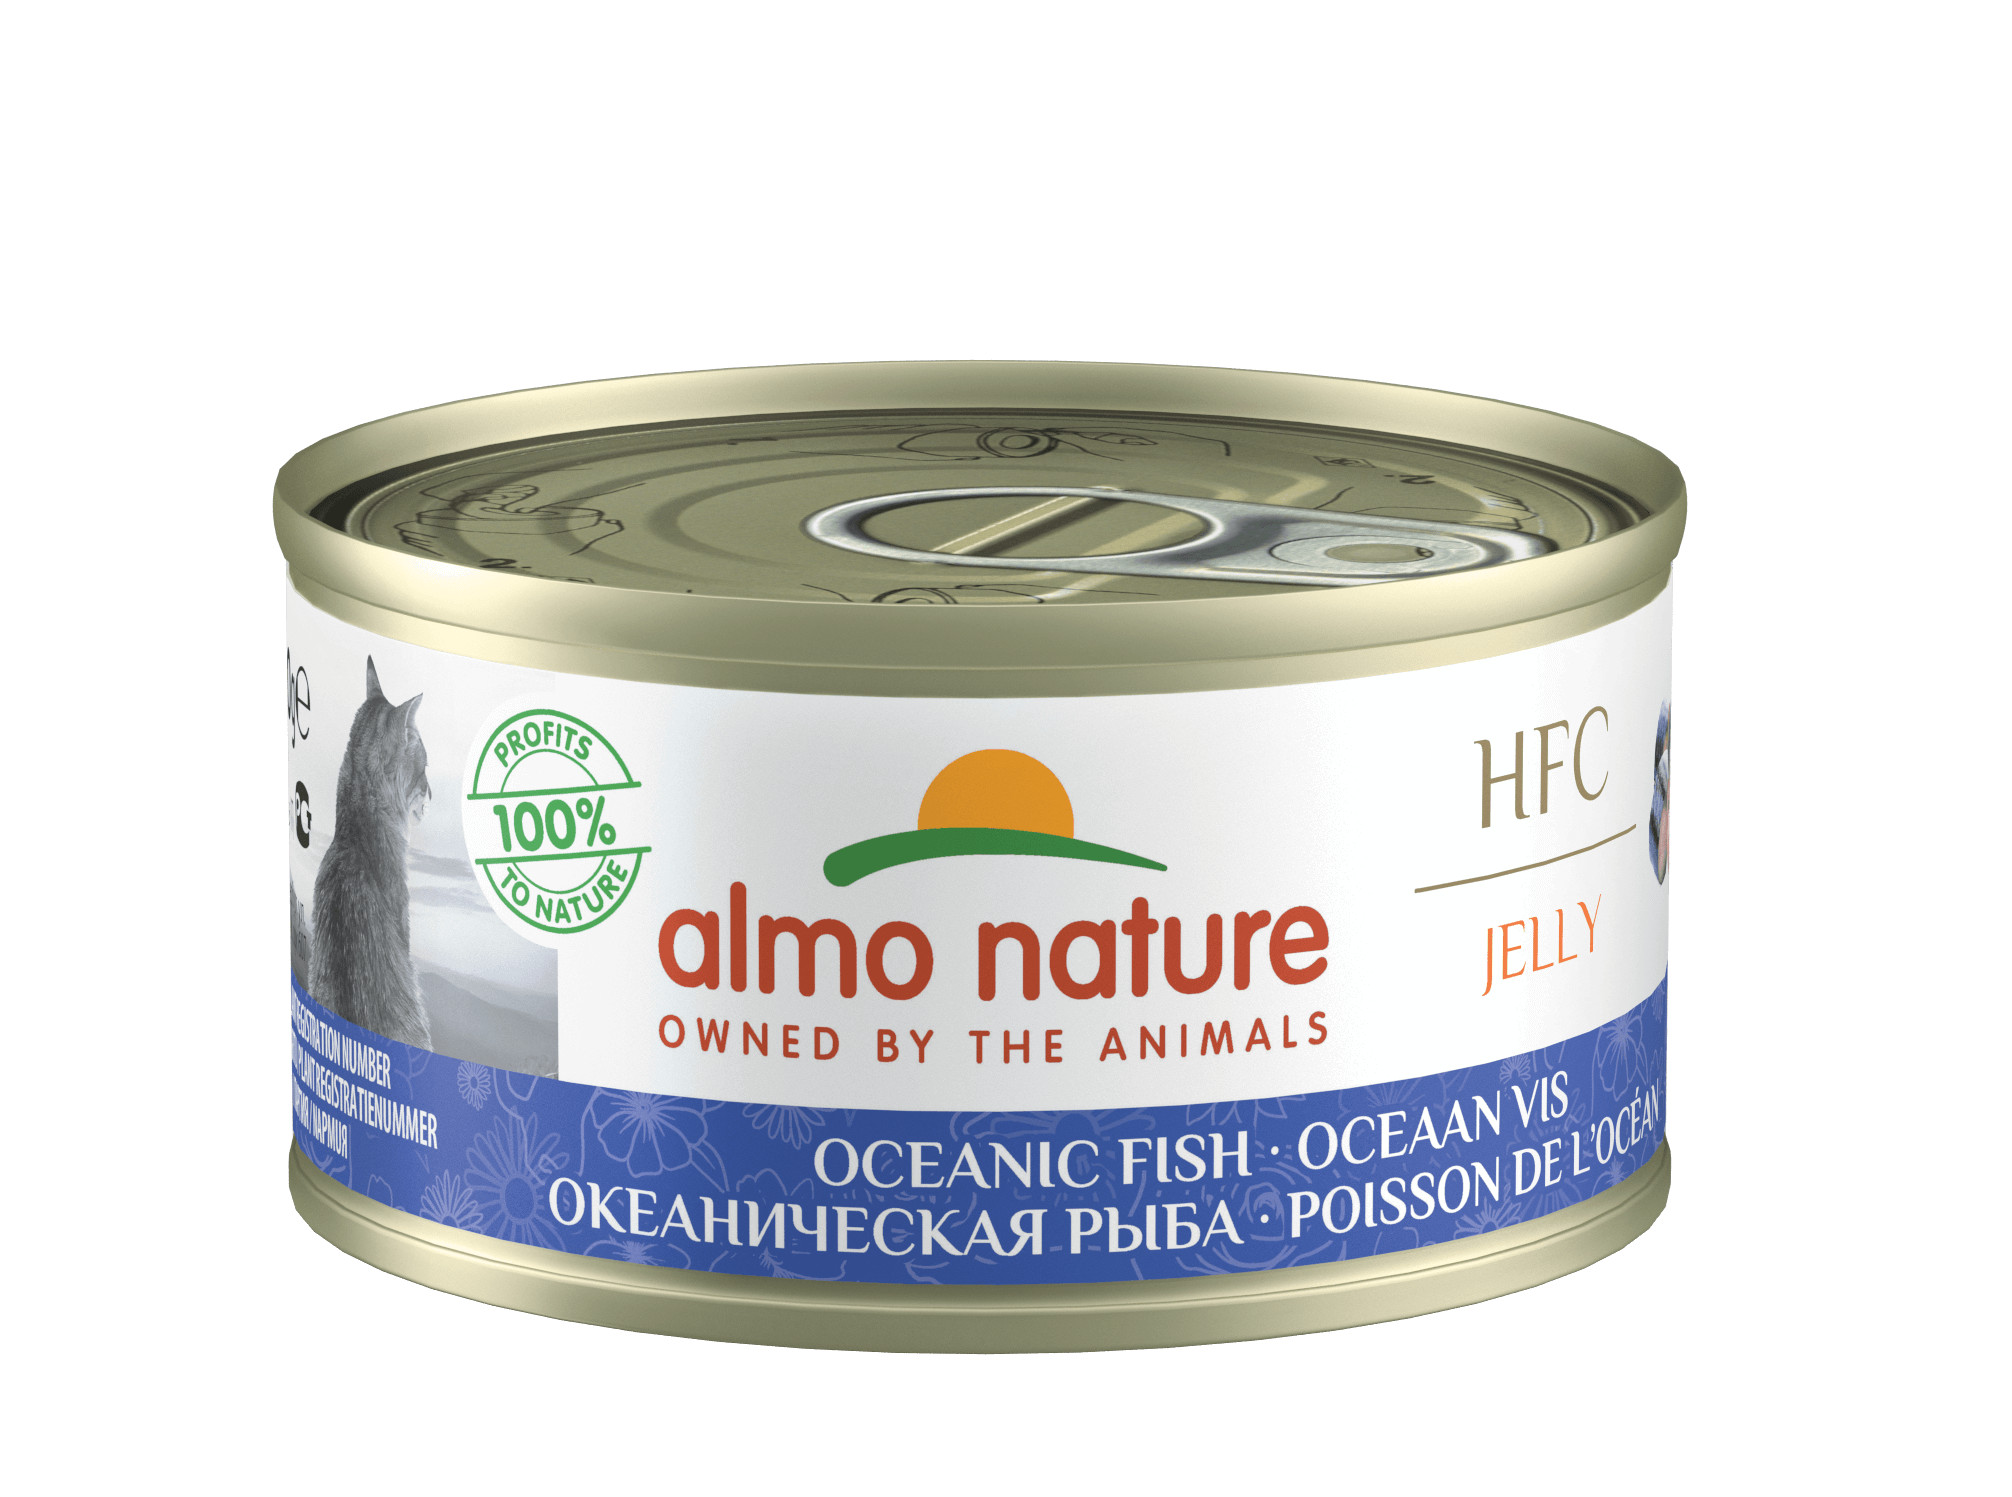 Almo Nature HFC Jelly Ozeanfisch Katzenfutter